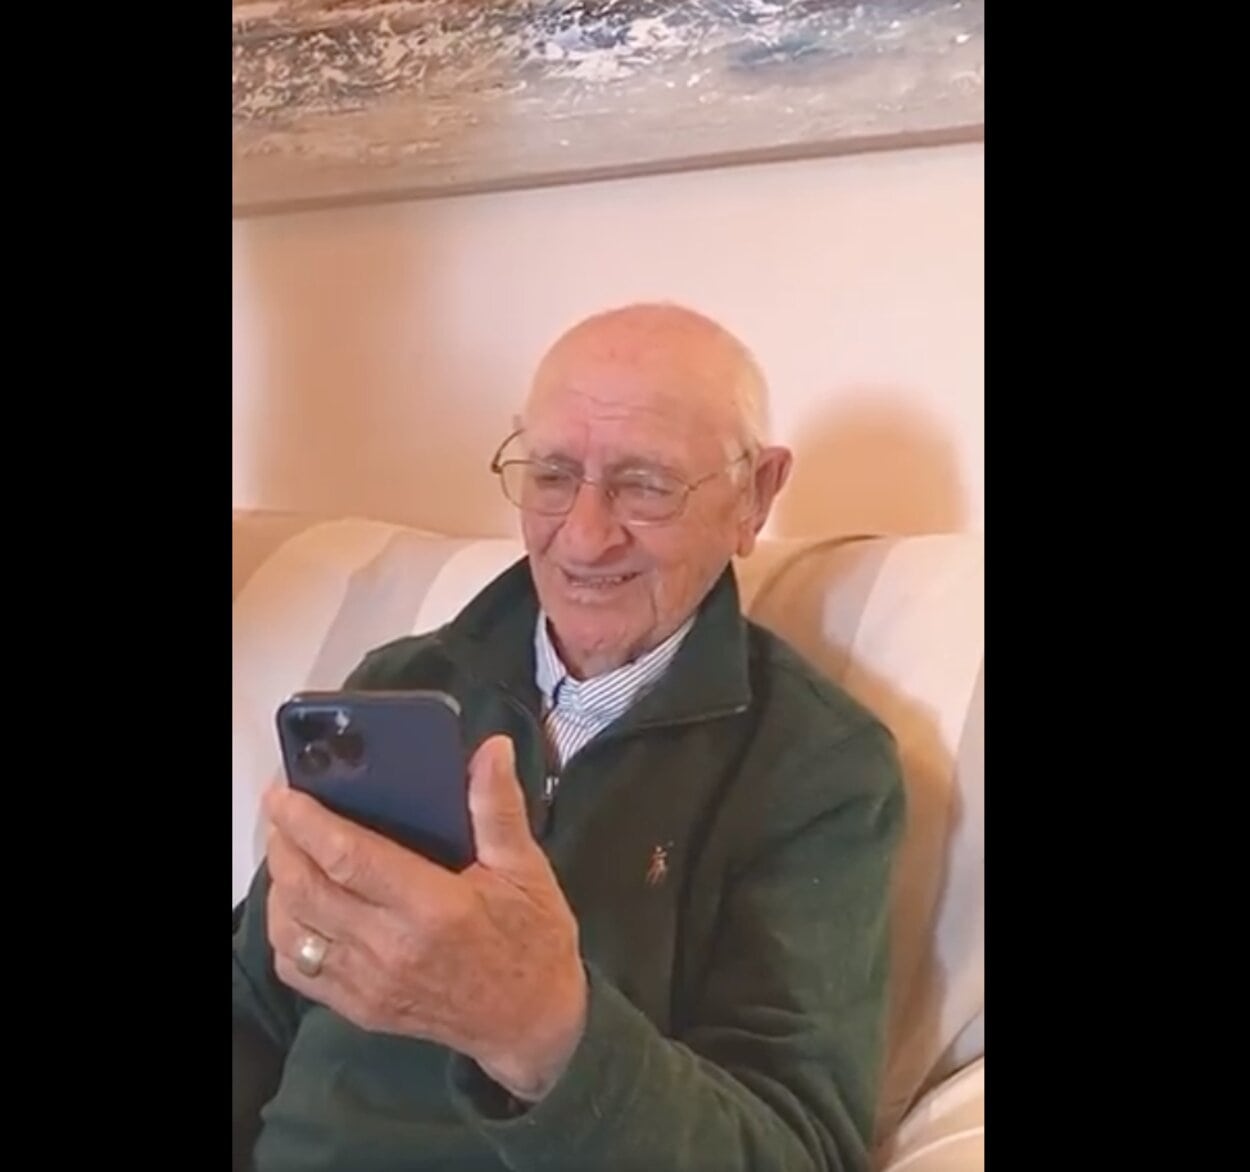 La emotiva reacción de un abuelo gallego al ser felicitado por Rafa Nadal en su 90 cumpleaños